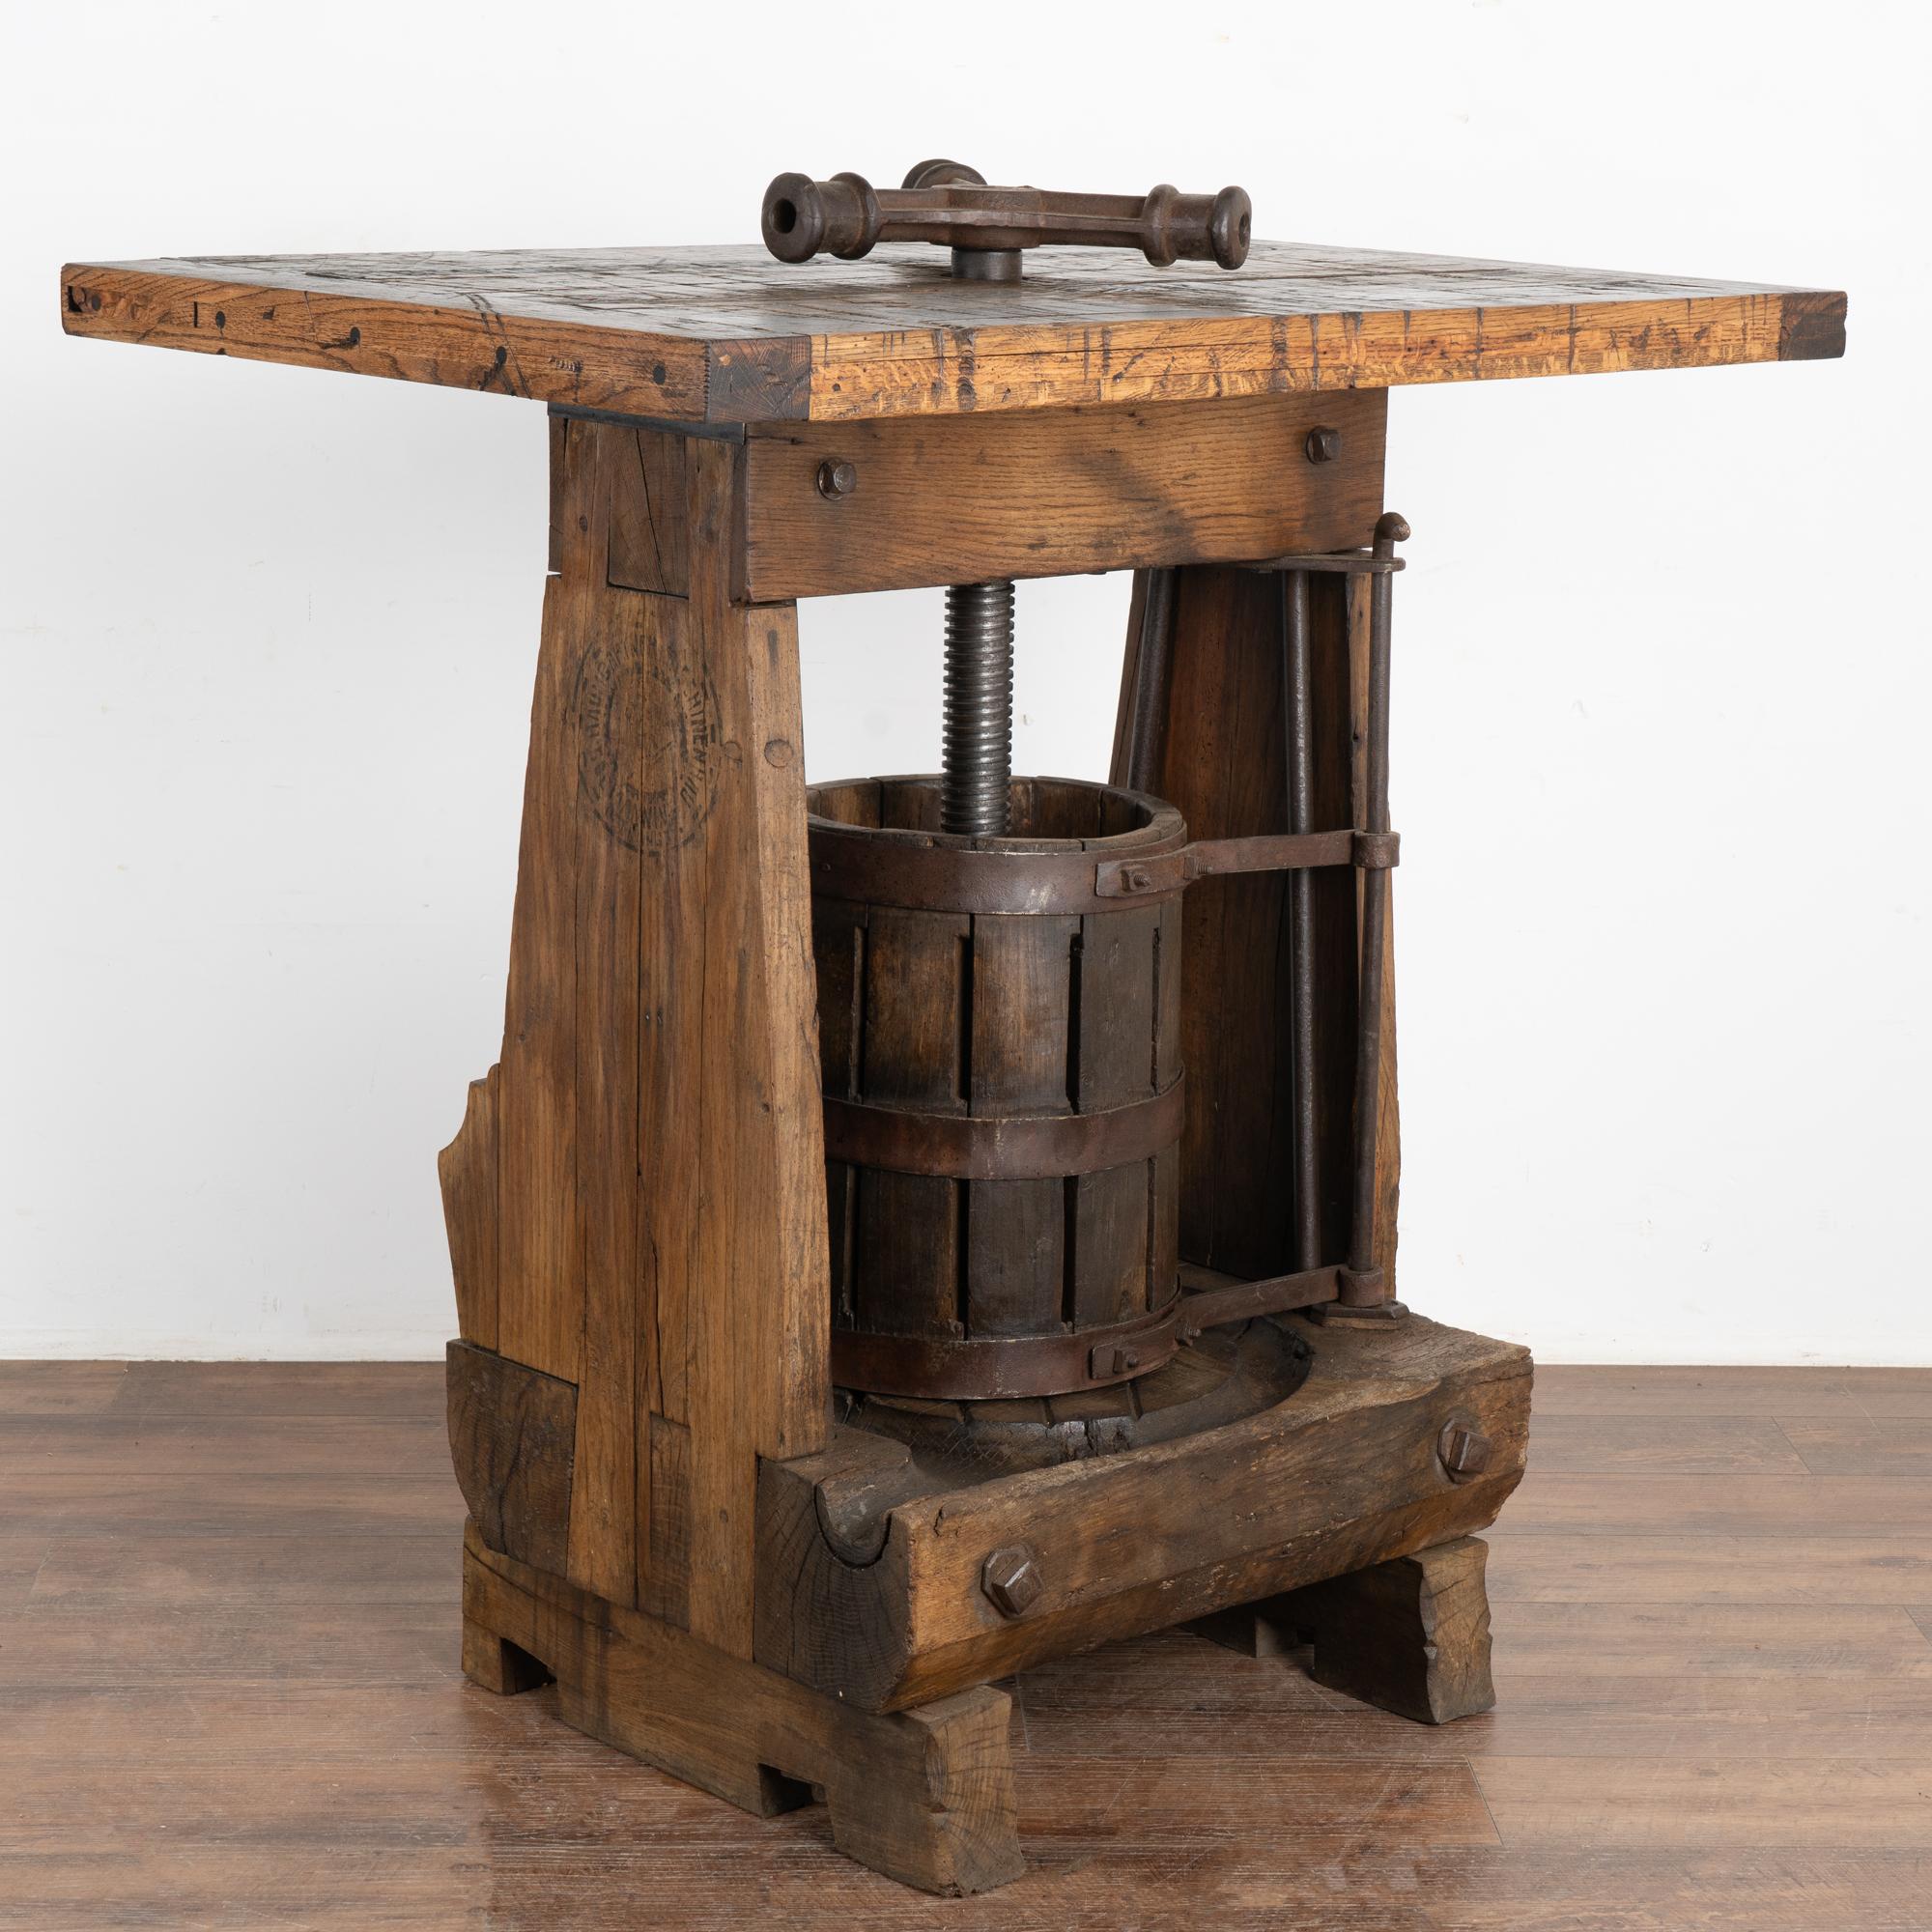 Cette table de dégustation de vin unique ou ce bar/table debout a été créé à partir d'un pressoir à vin antique provenant de Hongrie, qui sert de base intrigante.
Le dessus est fabriqué à partir d'un vieux plancher de wagon de marchandises ou de